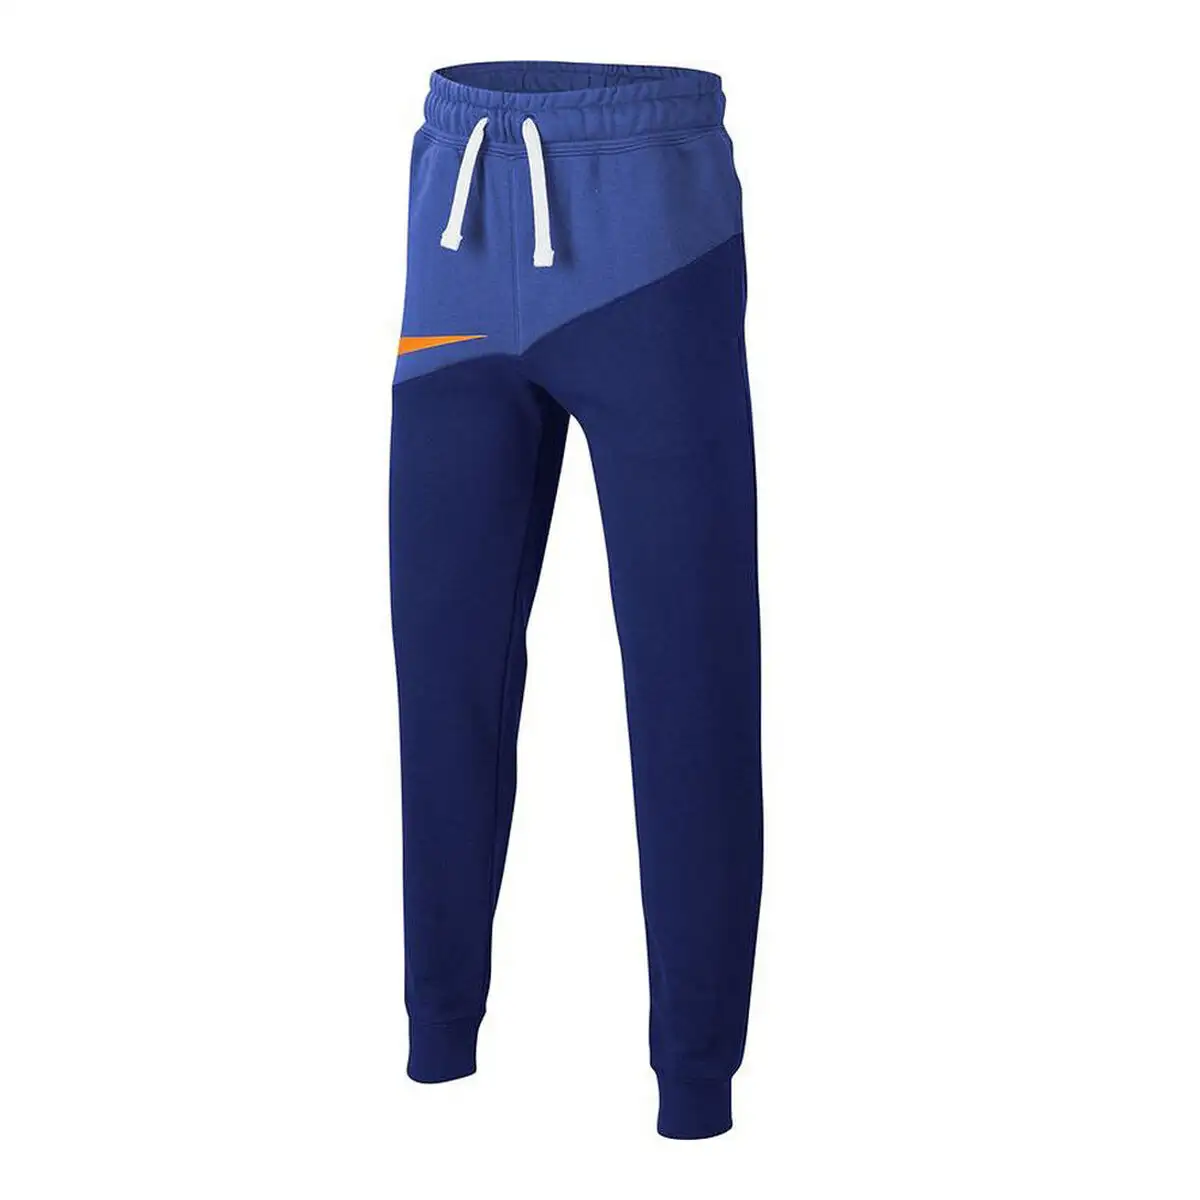 Pantalon de sport long nike sportswear bleu enfants_4680. DIAYTAR SENEGAL - Votre Passage vers le Chic et l'Élégance. Naviguez à travers notre boutique en ligne pour trouver des produits qui ajoutent une touche sophistiquée à votre style.